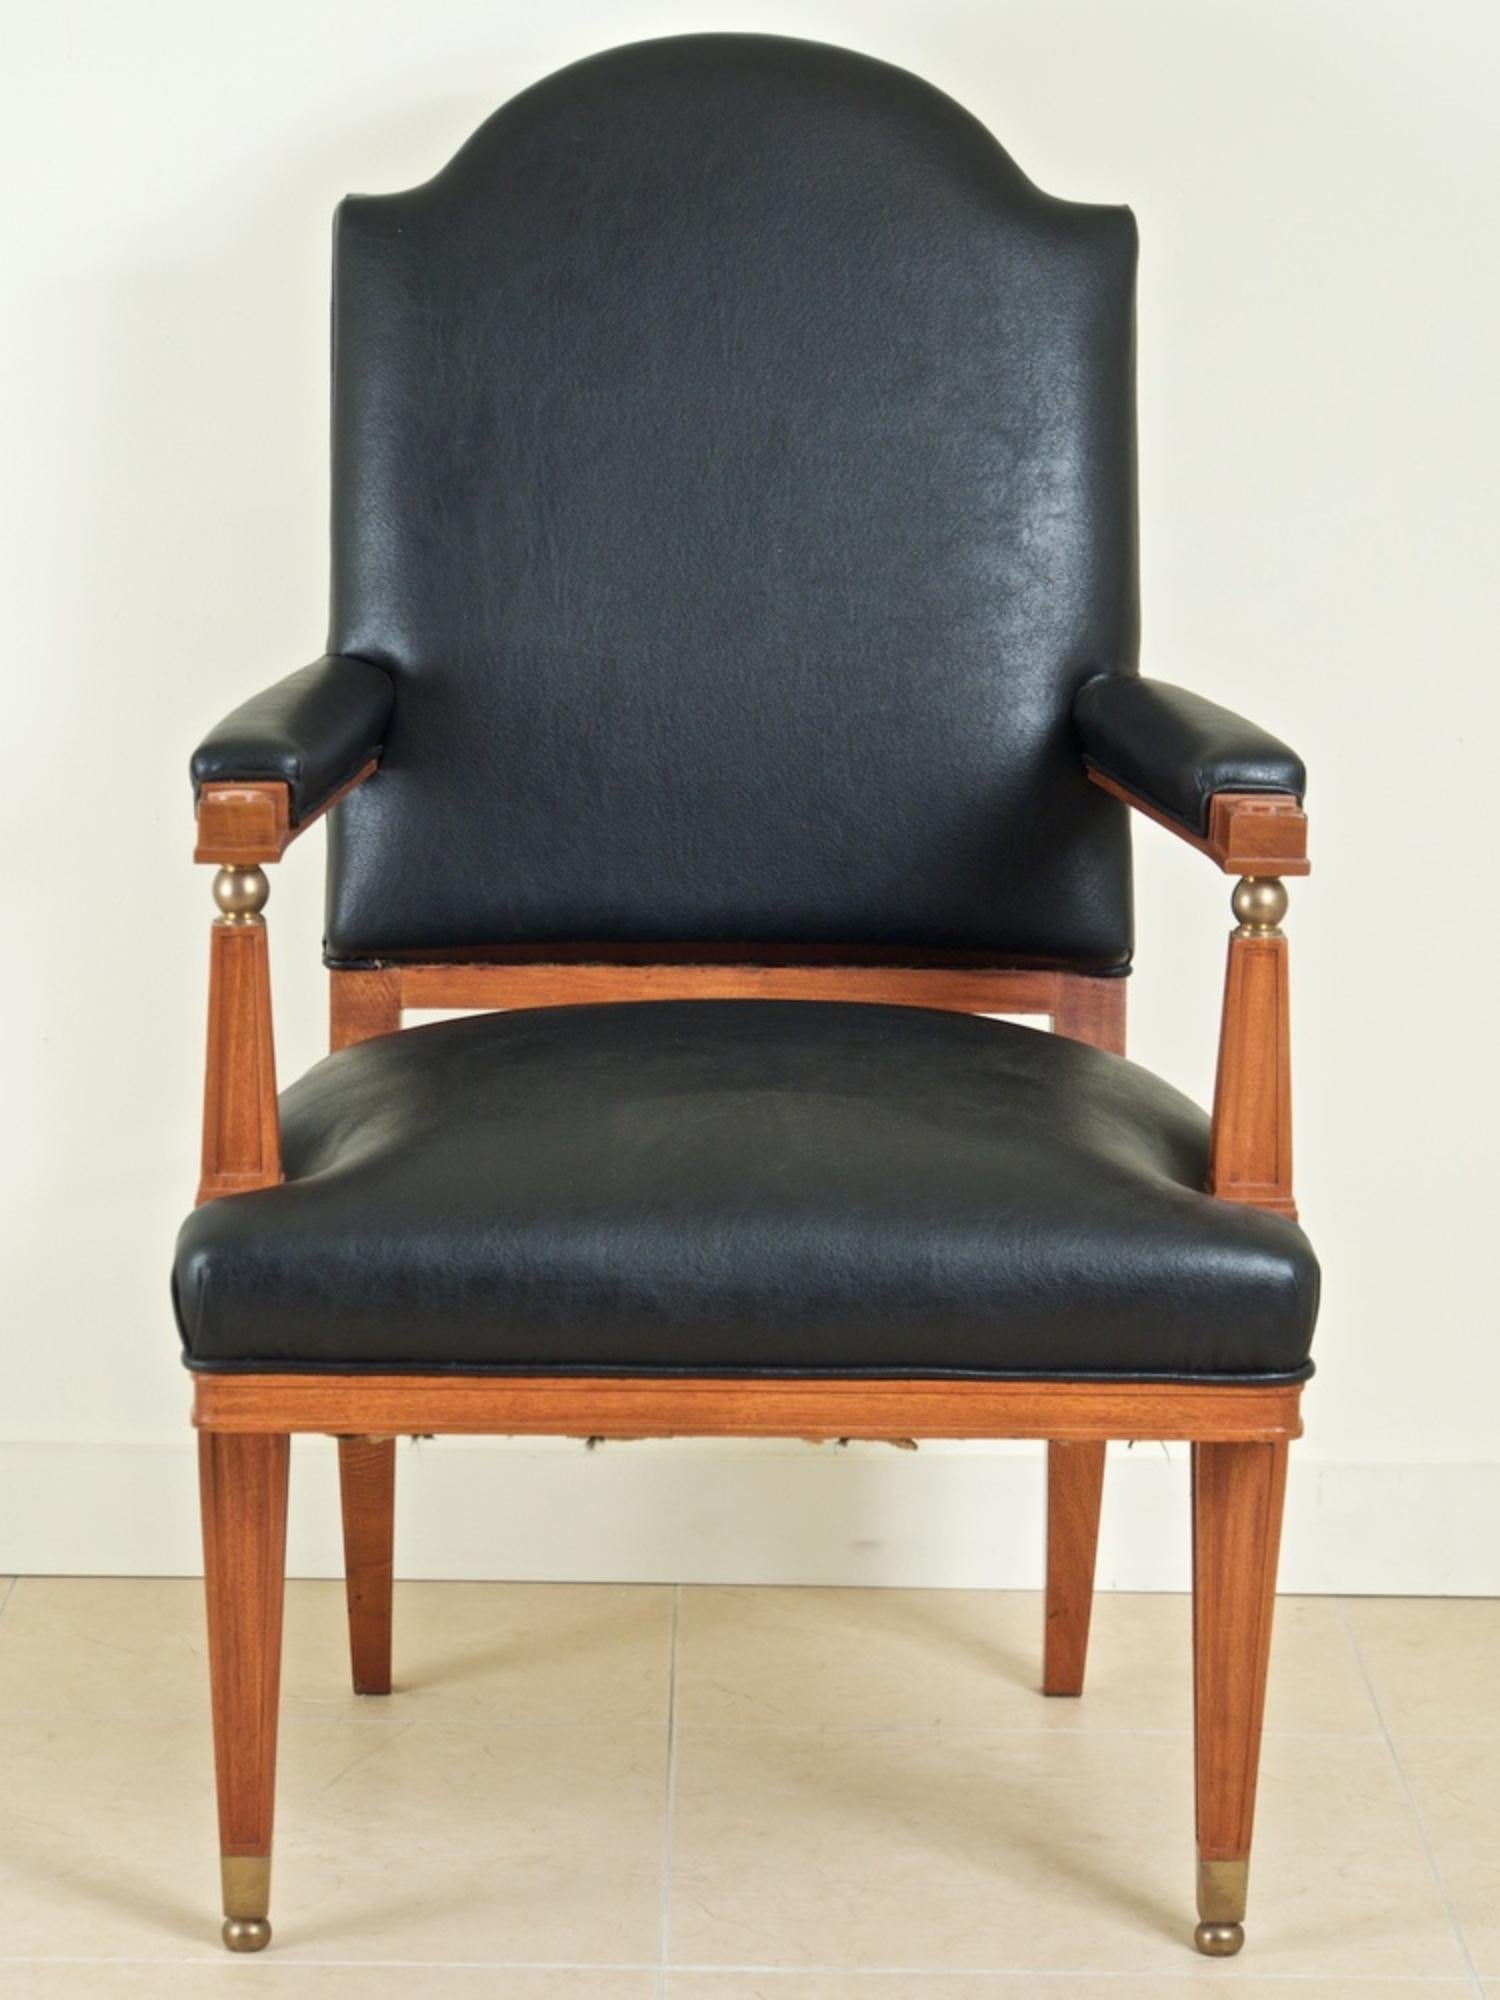 Trois fauteuils des années quarante par Lucien Rollin, circa 1945, en bois satiné avec des montures en bronze. Disponible individuellement. 24